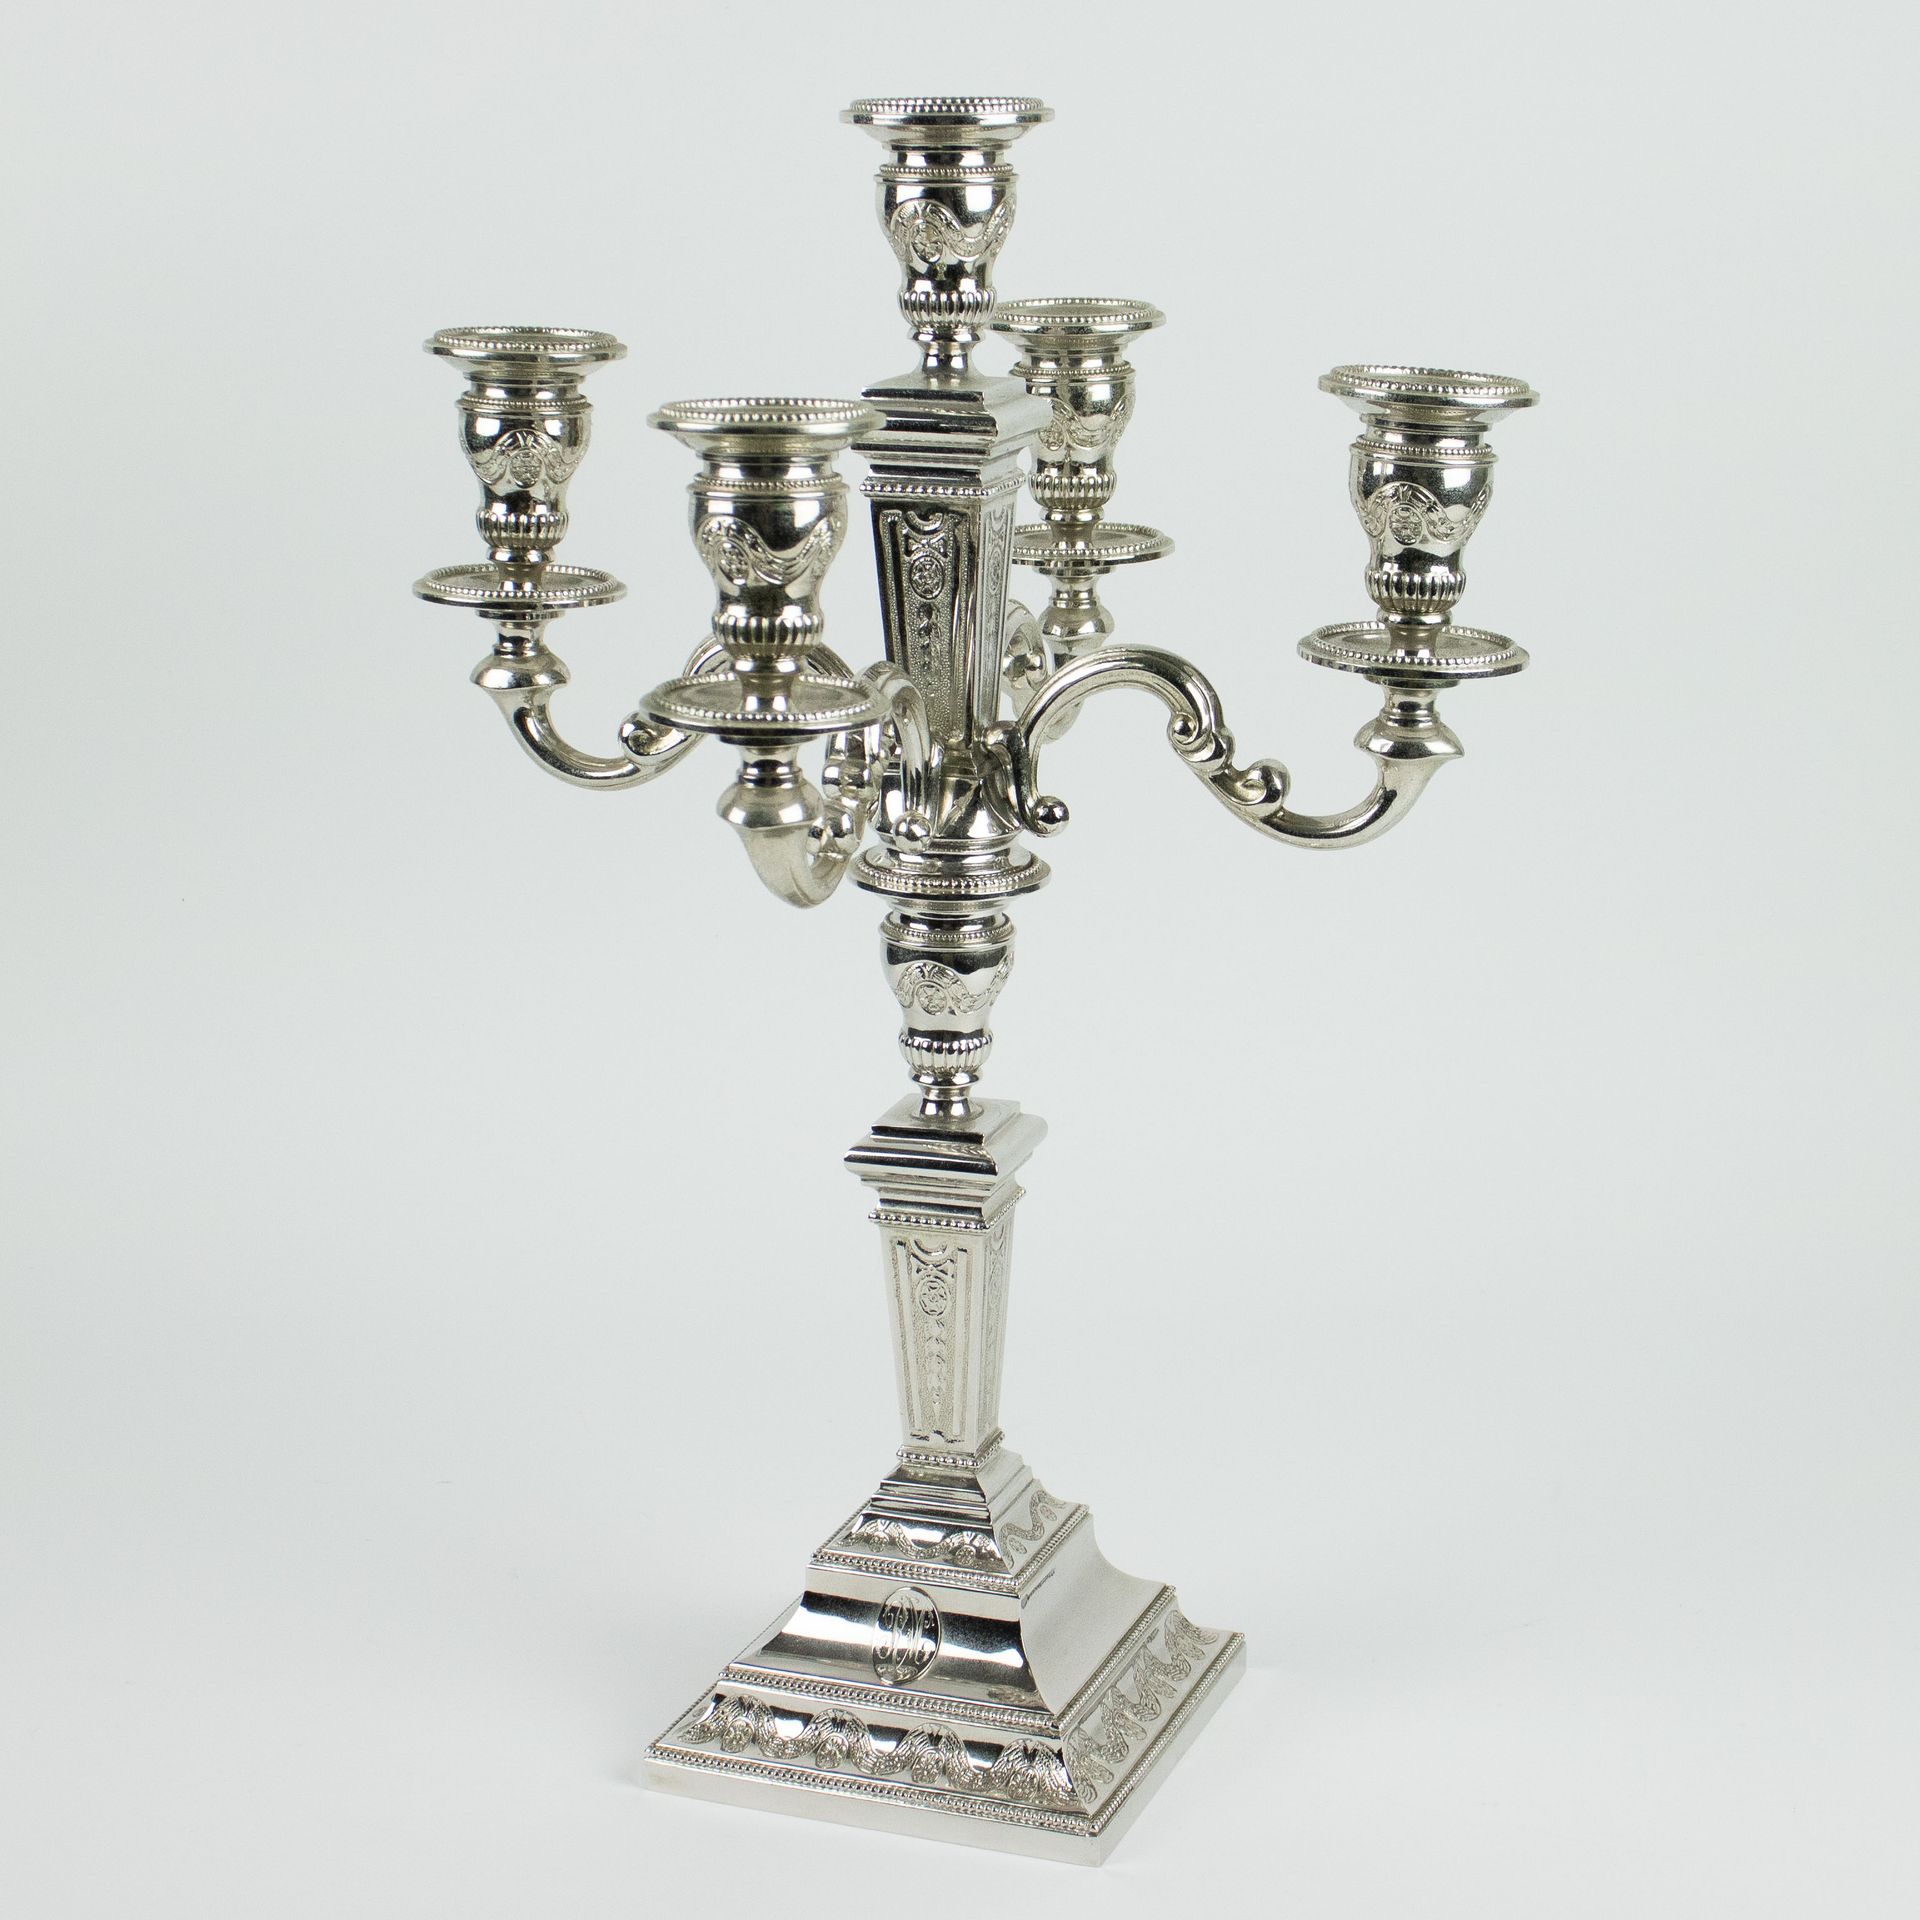 Silver candlestick with 5 arms Zilveren kandelaar met 5 armen.
H 41.5 cm